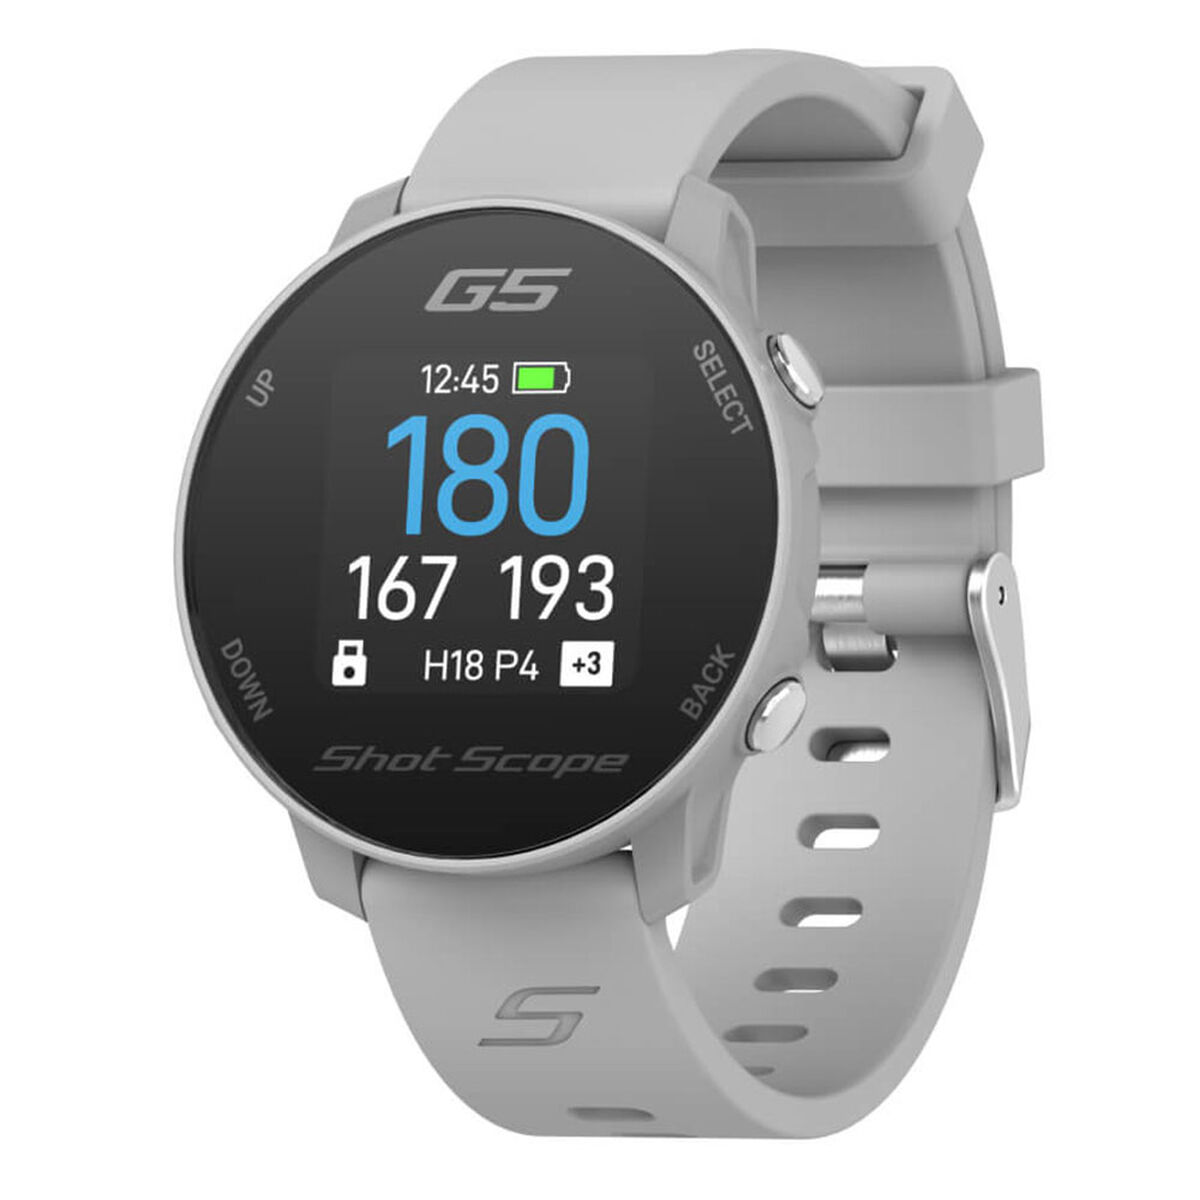 Shot Scope G5 Golf GPS Golf Watch - Dual Strap, Grey, One Size | American Golf